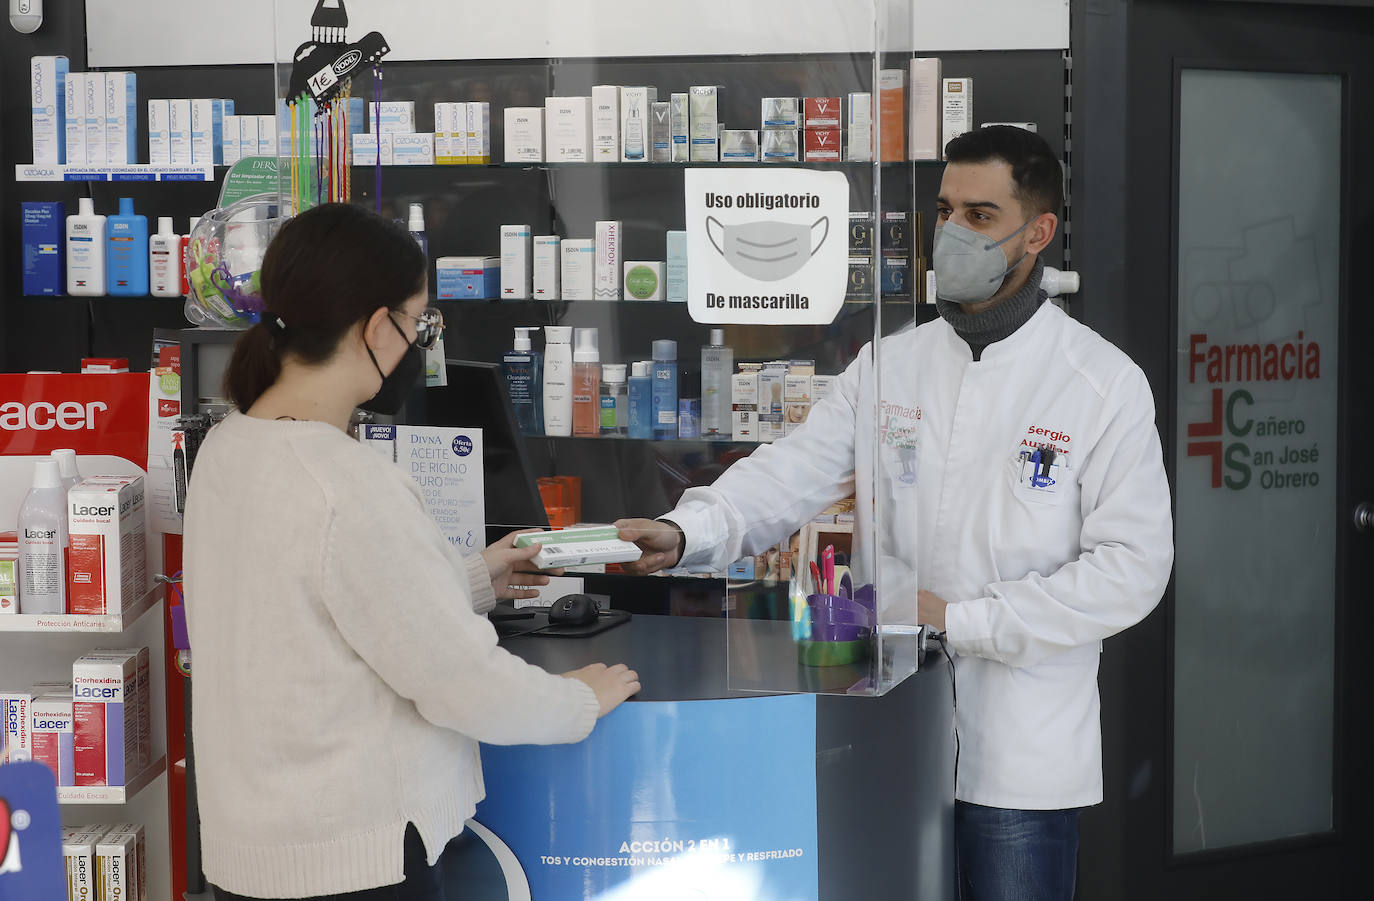 La masiva venta de tests de antígenos en Córdoba, en imágenes